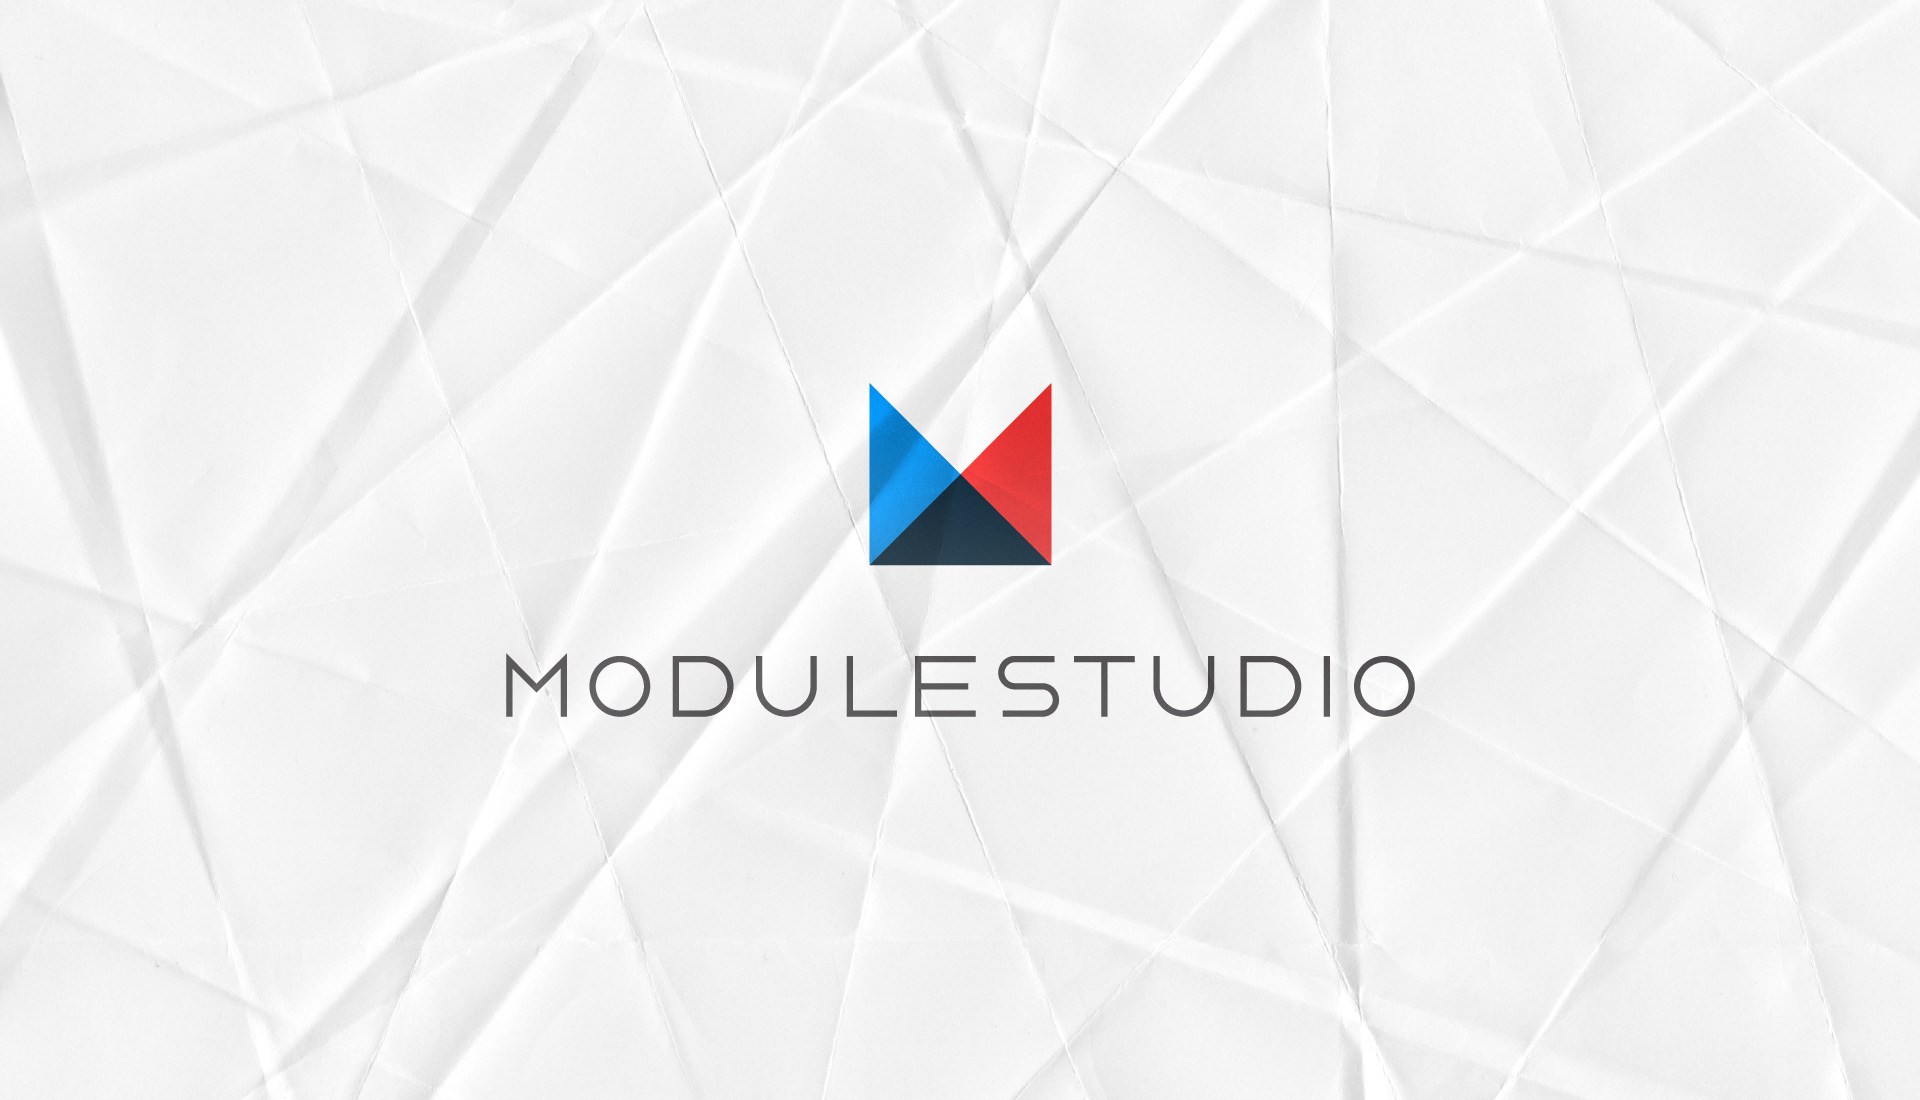 ModuleStudio 1.3.1 has been released